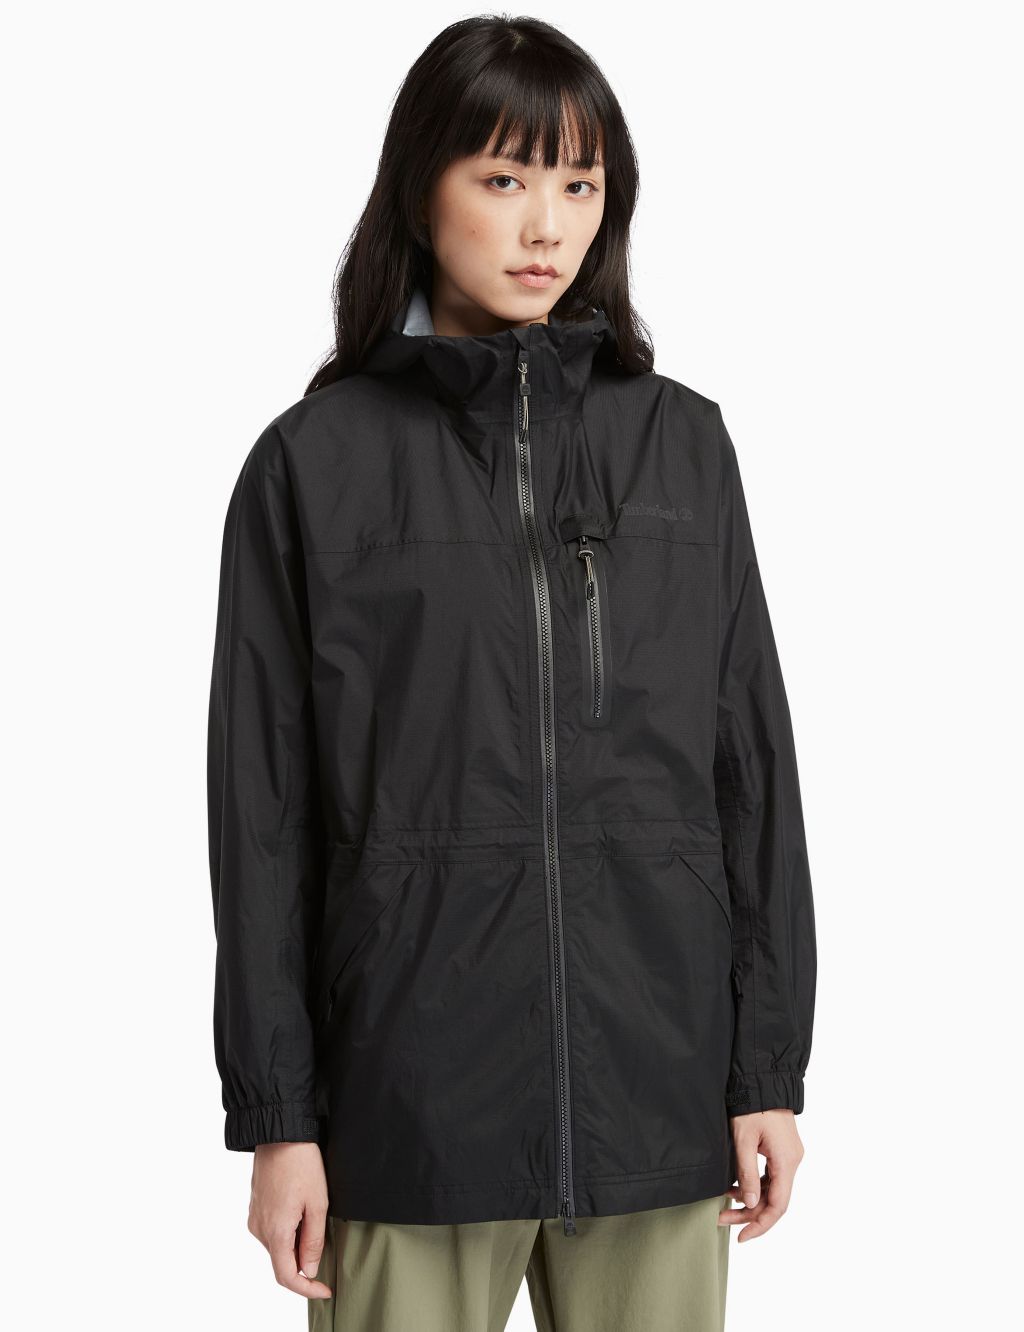 Jenness Waterproof Hooded Packaway Rain Jacket